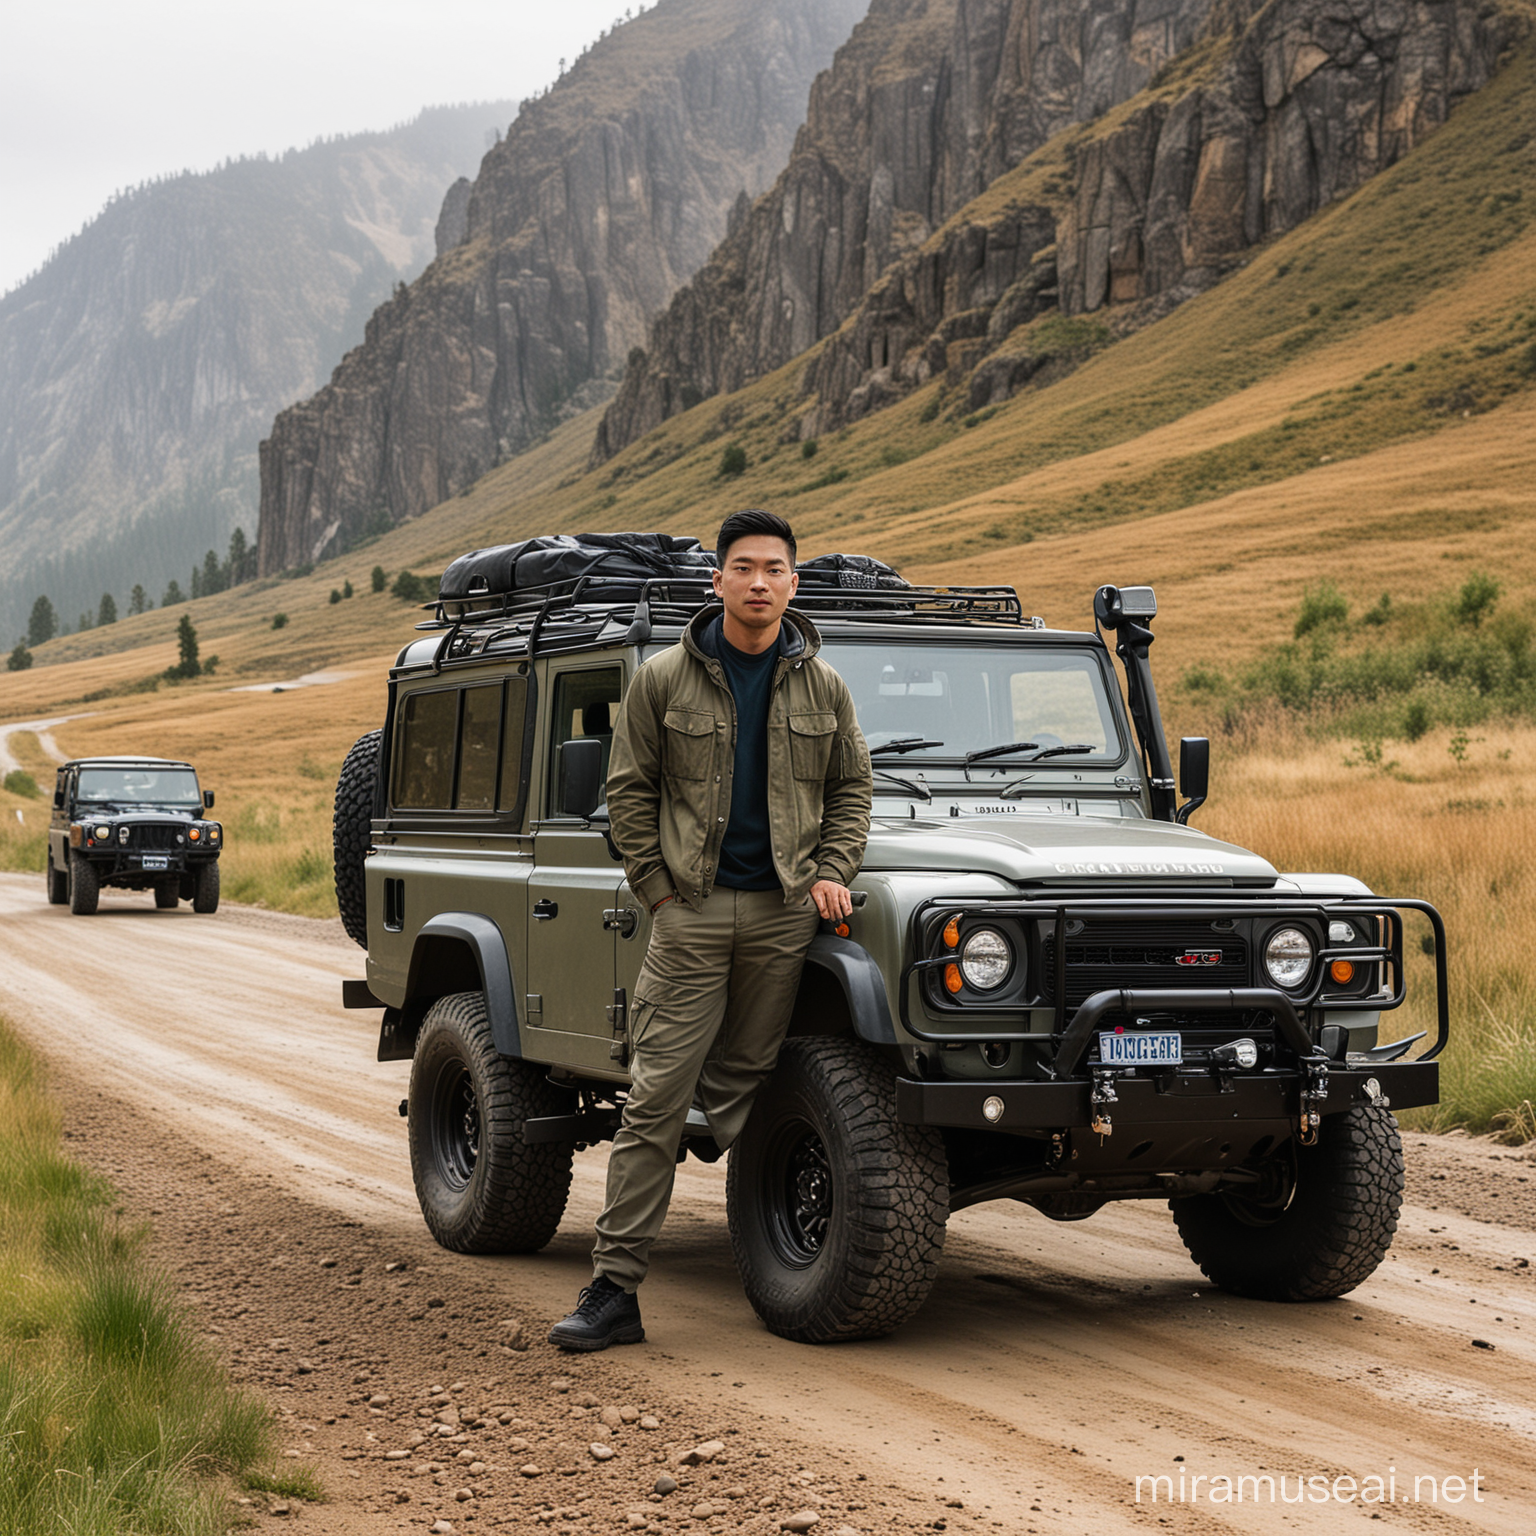 Asian Men in Adventure Gear Standing by Jeep on Rocky Terrain